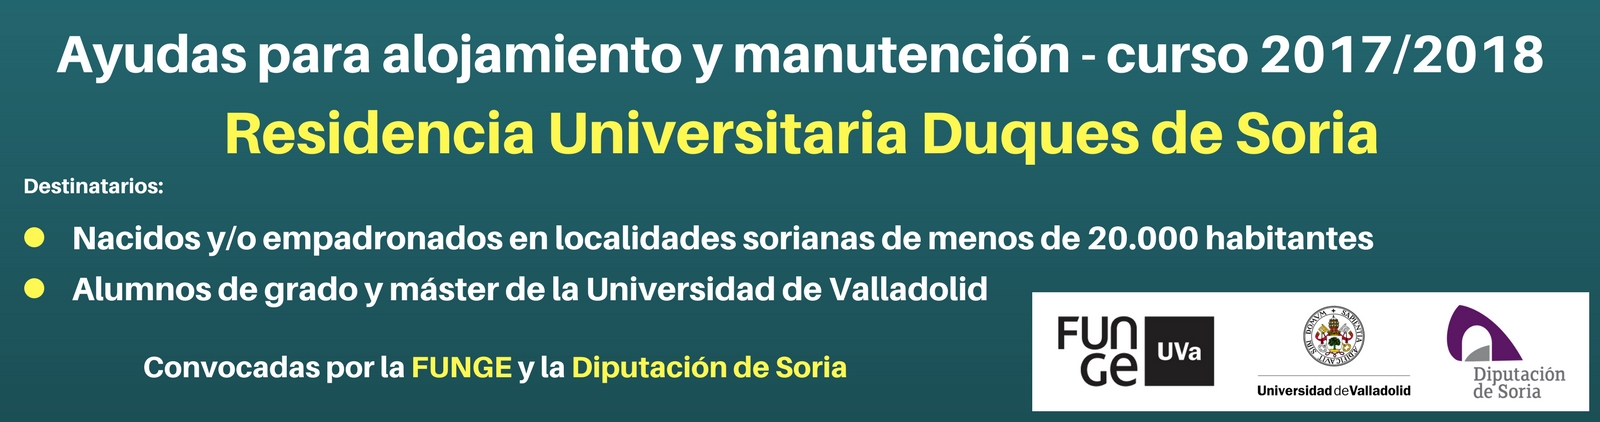 Ayudas para alojamiento y manutención - Residencia Duques de Soria 2017-2018